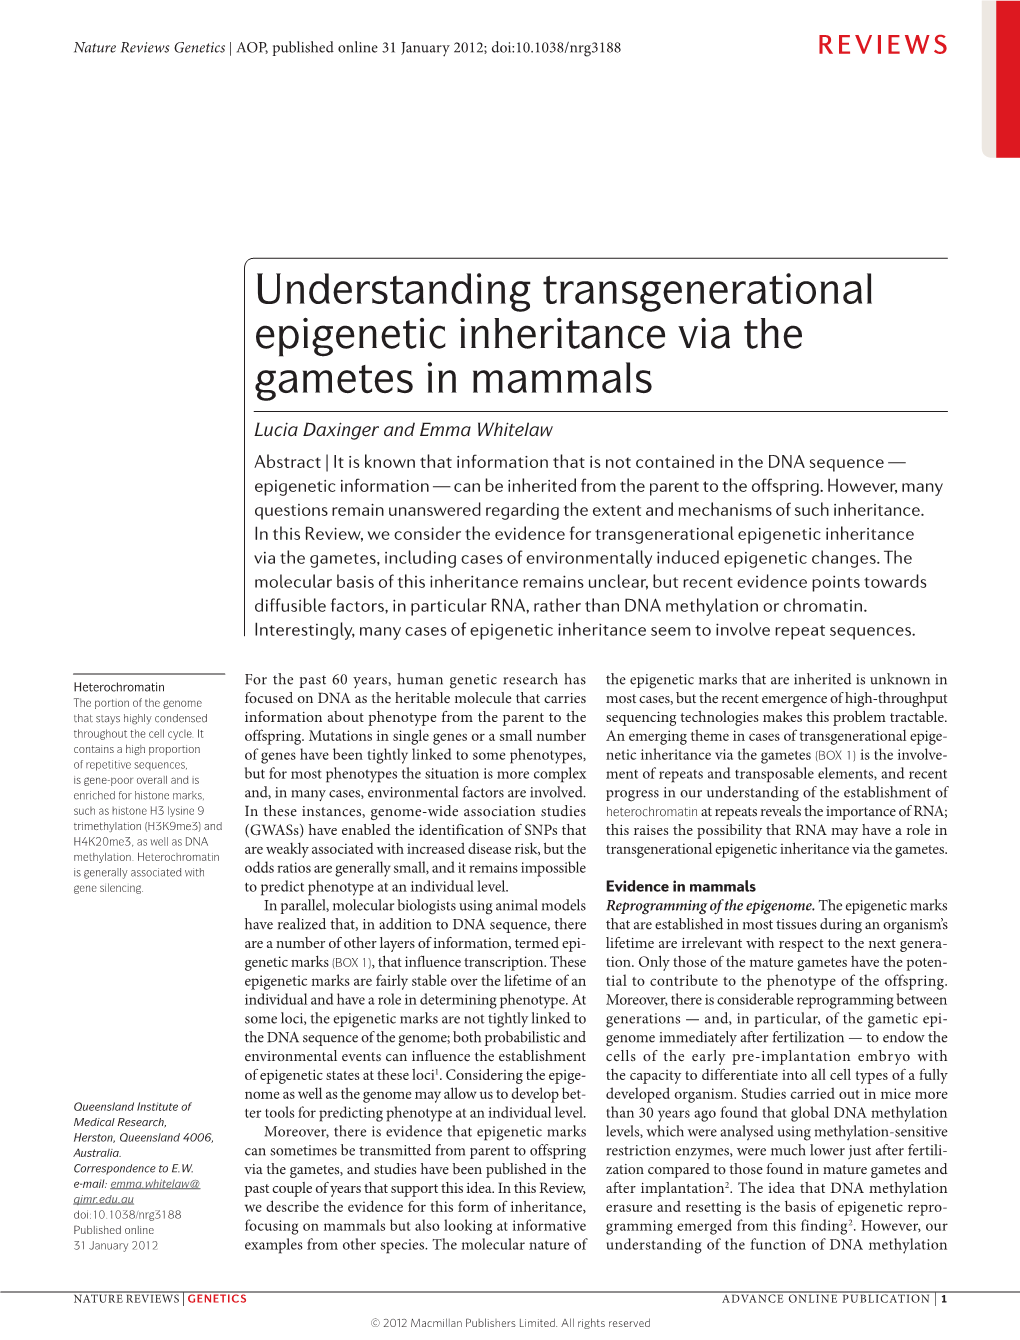 Understanding Transgenerational Epigenetic Inheritance Via the Gametes in Mammals